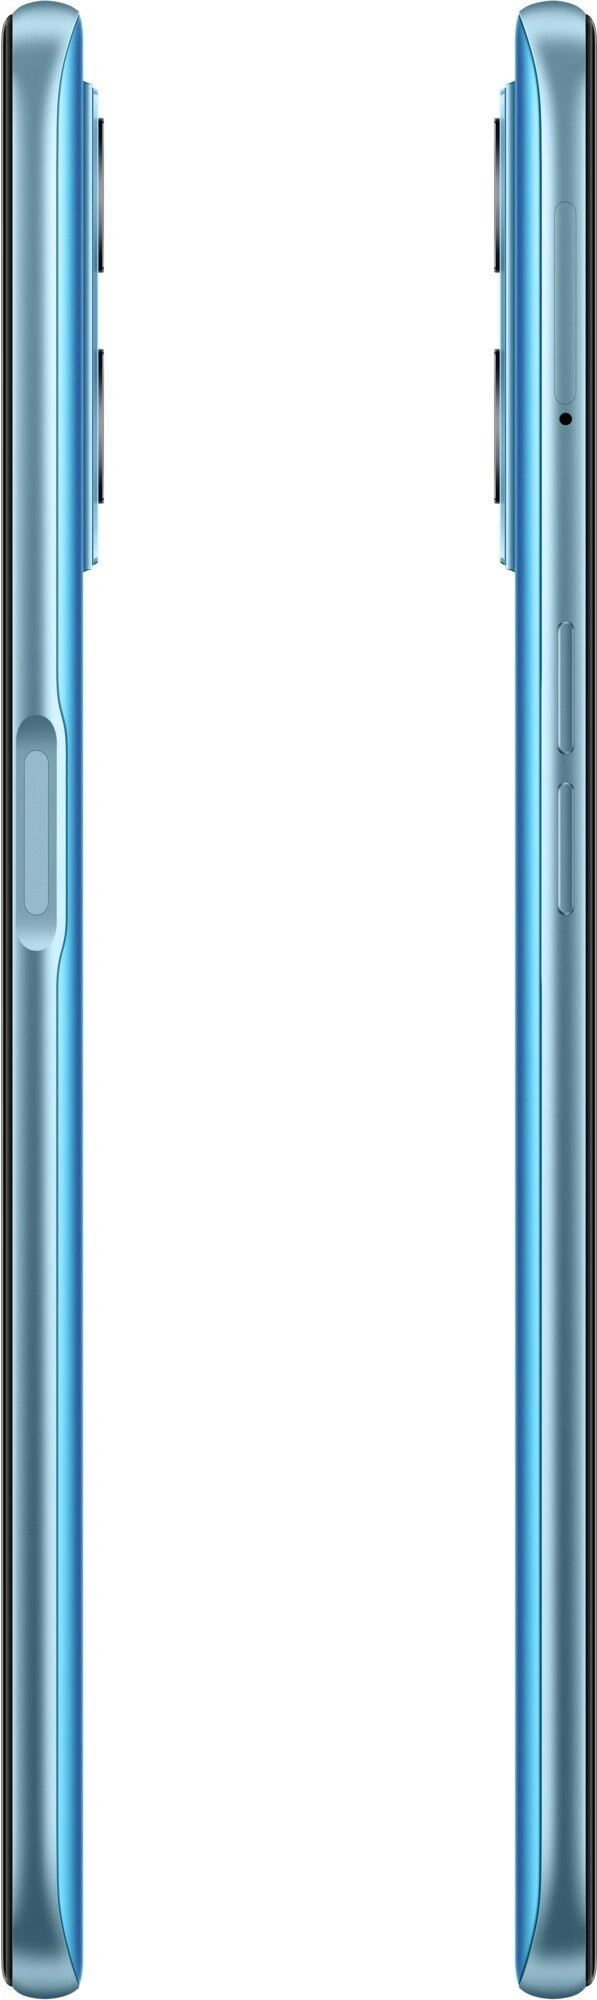 Realme 9i 4/64 GB, Prism Blue